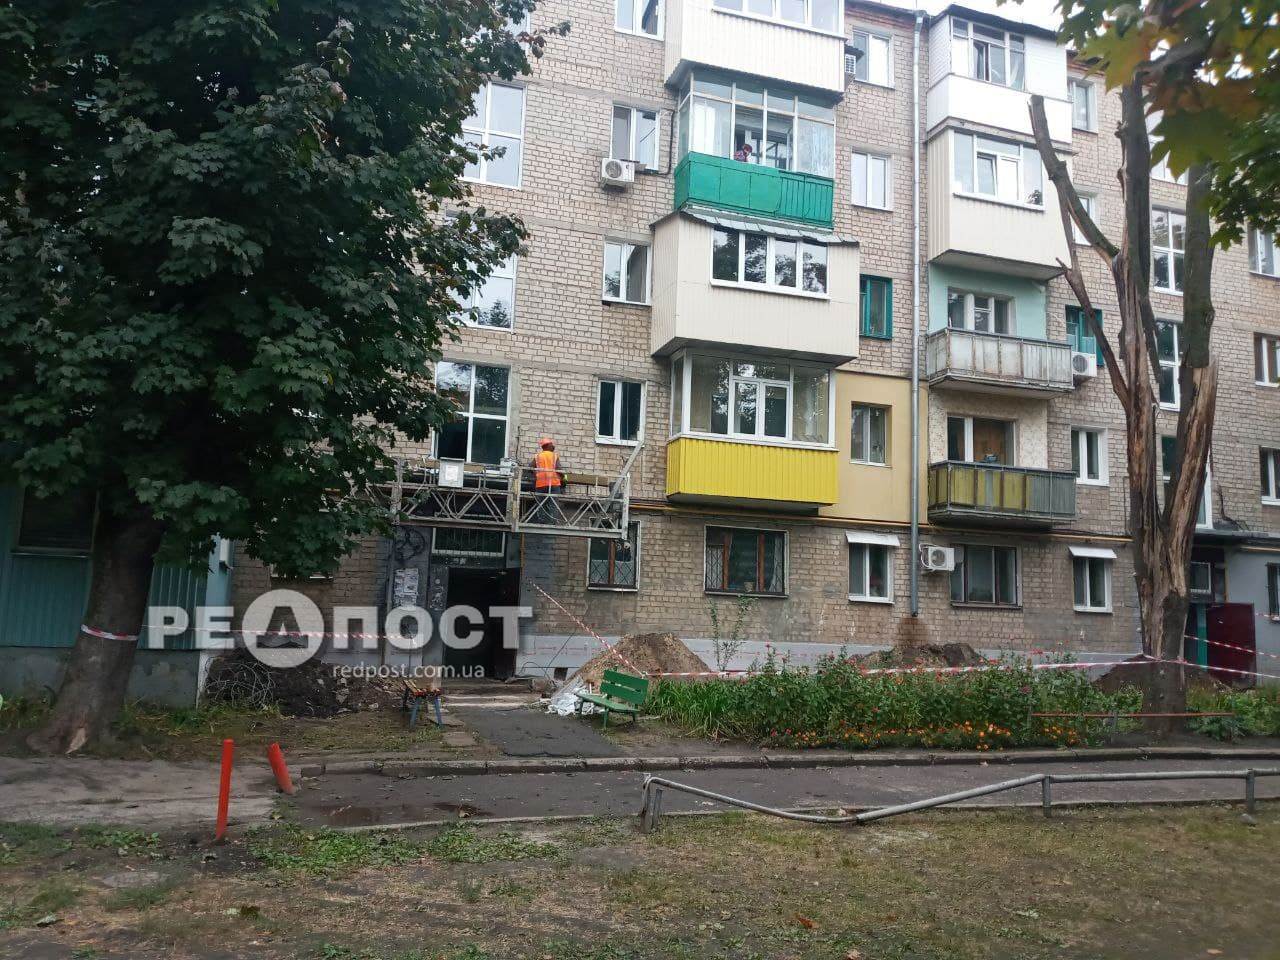 Первый "Энергодом" в Харькове позволит экономить жильцам